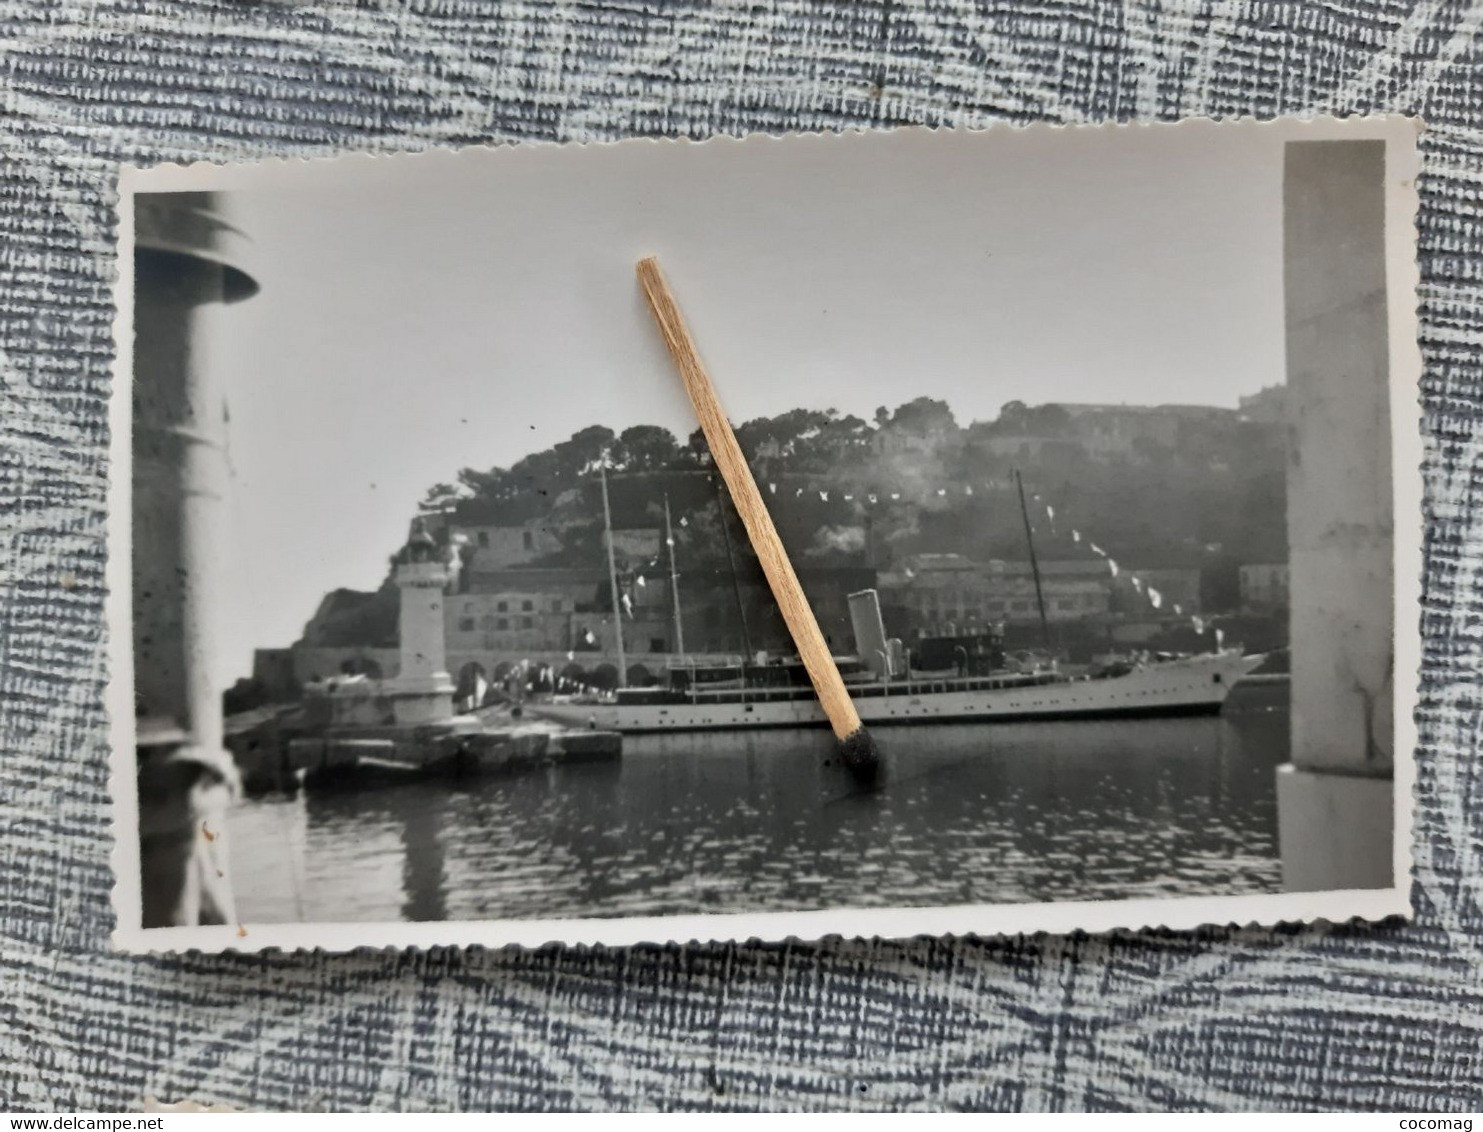 NAVIRE MILITAIRE FREGATE LA DECOUVERTE PHOTO 1948 NAVIRE YACHT  DANS LE PORT DE MONACO  11.5 X 7.2 CM - Barche